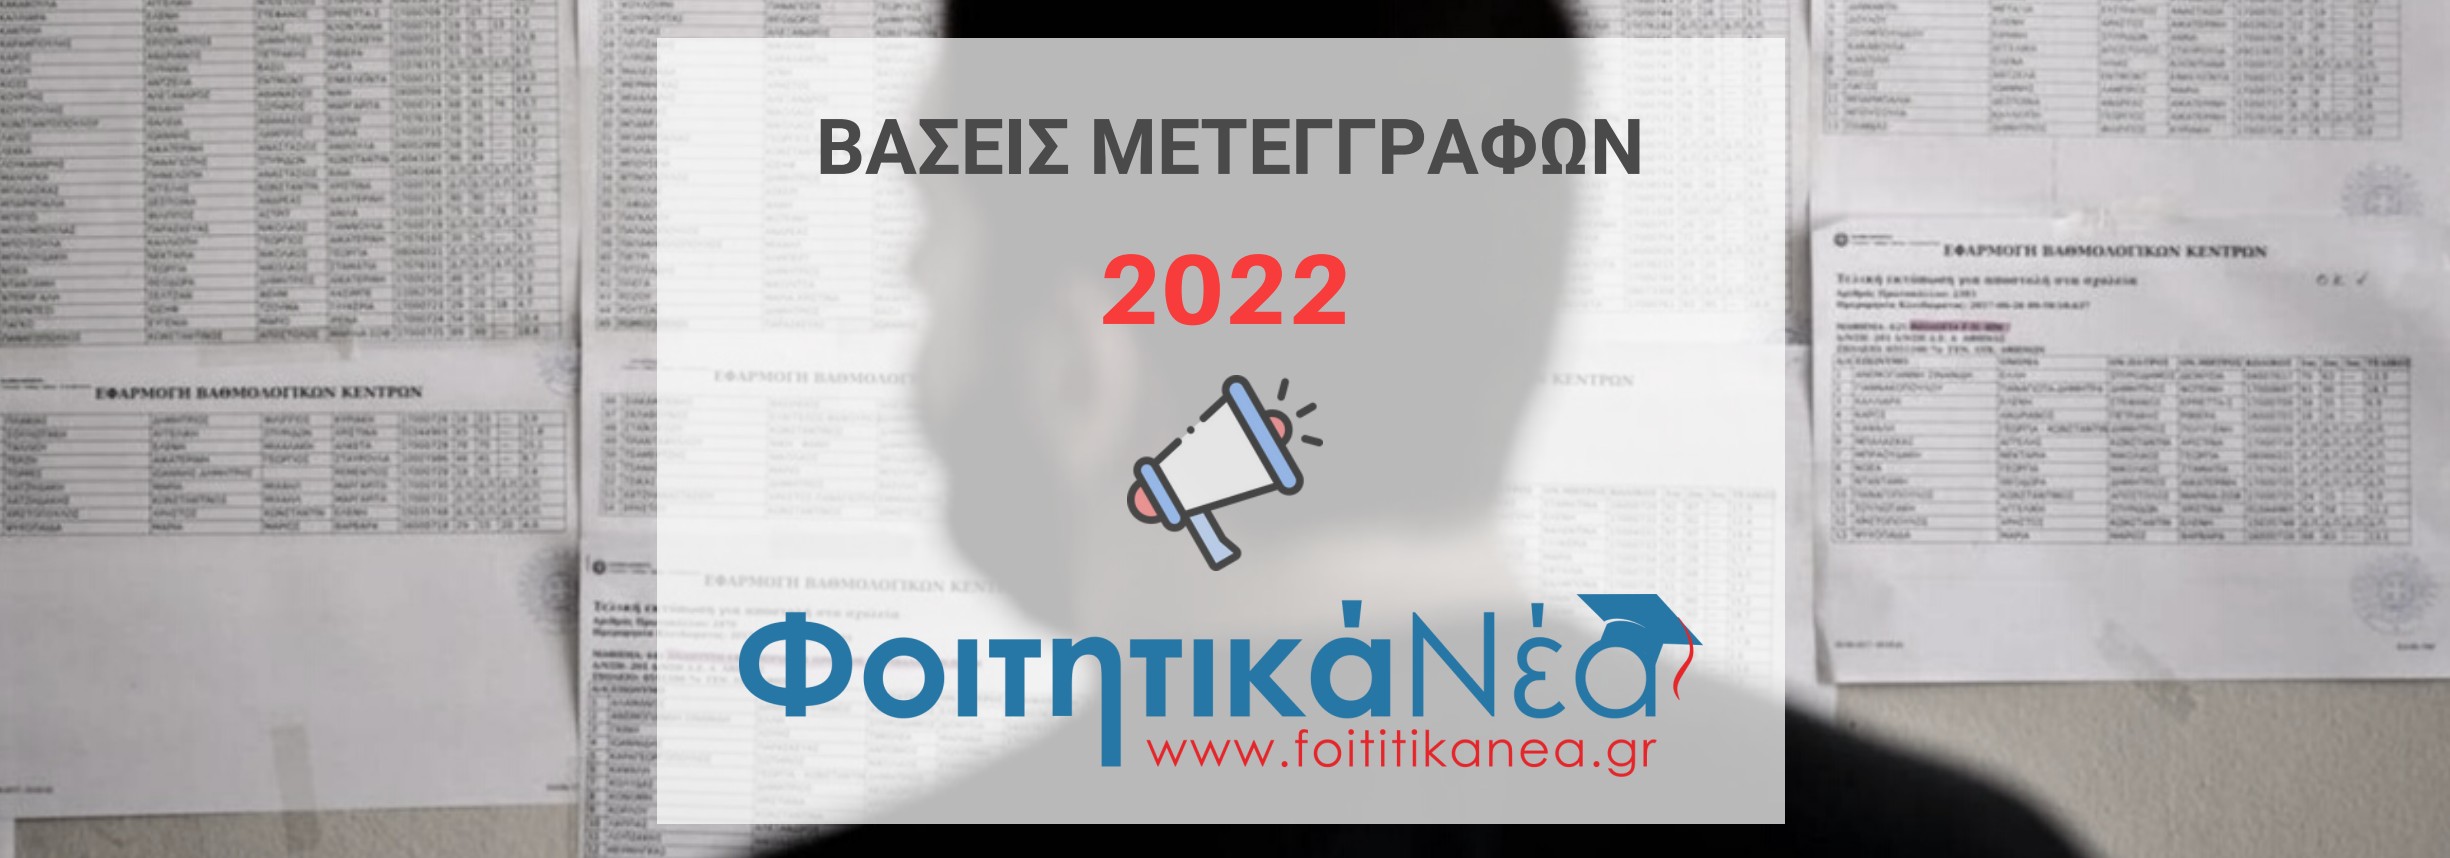 Βάσεις Μετεγγραφών 2022